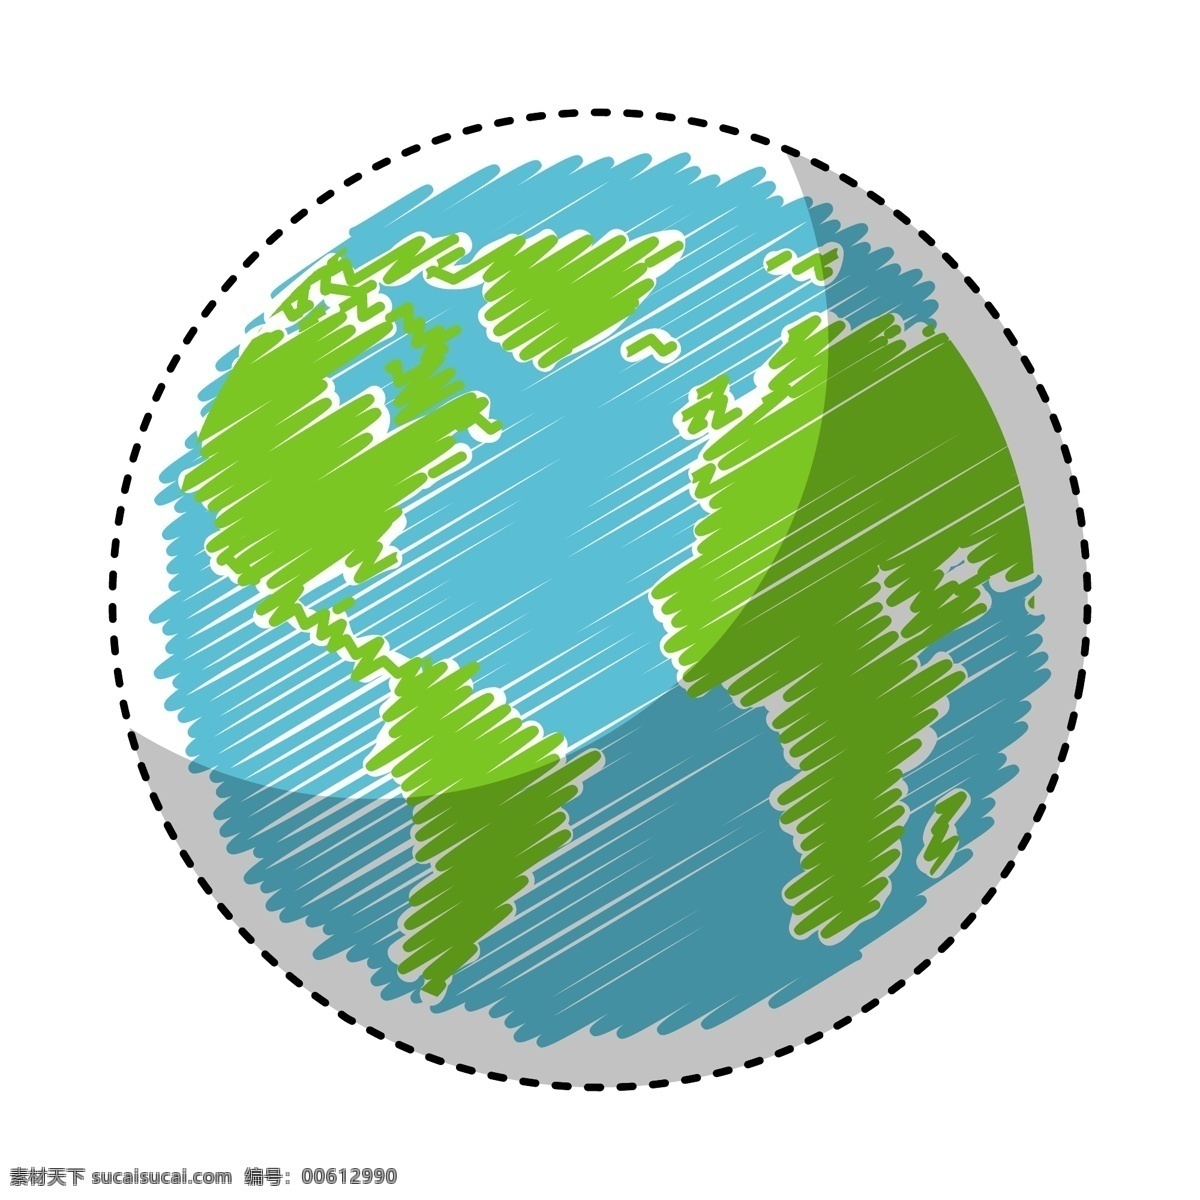 抽象地球 世界地图 拼接地球 地球元素 矢量 地球仪 保护地球 地球科技 地球 网络地球 智慧地球 地球线条 地球运动 地球宣传 地球素材 蓝色地球 黑色地球 绿色地球 科技地球 地球模型 地球大全